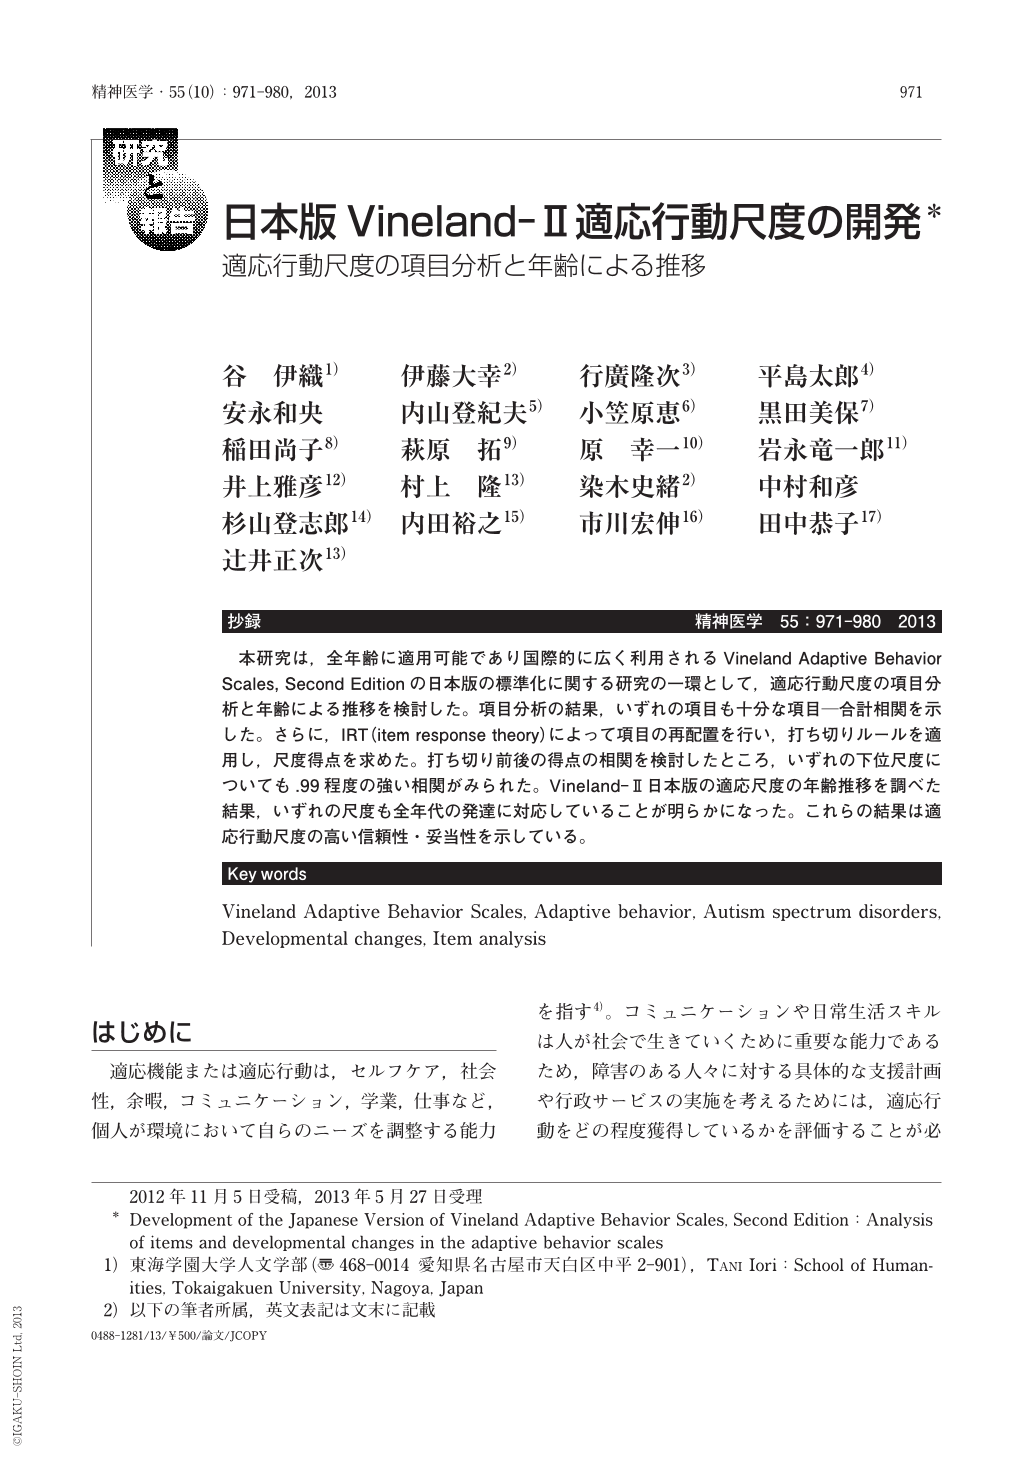 日本版vineland Ⅱ適応行動尺度の開発 適